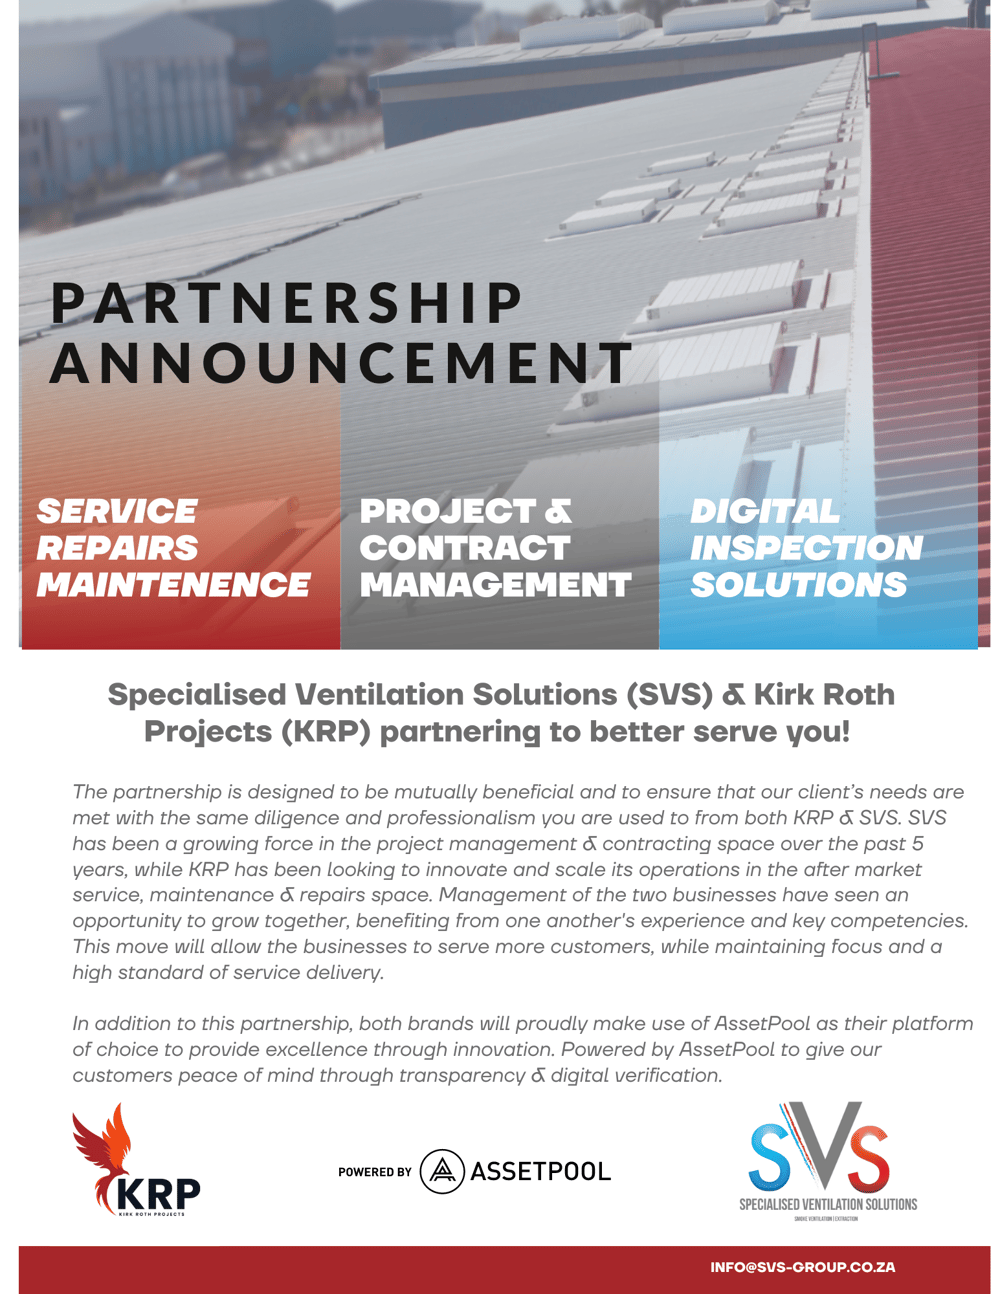 KRP & SVS Partnership announcement1